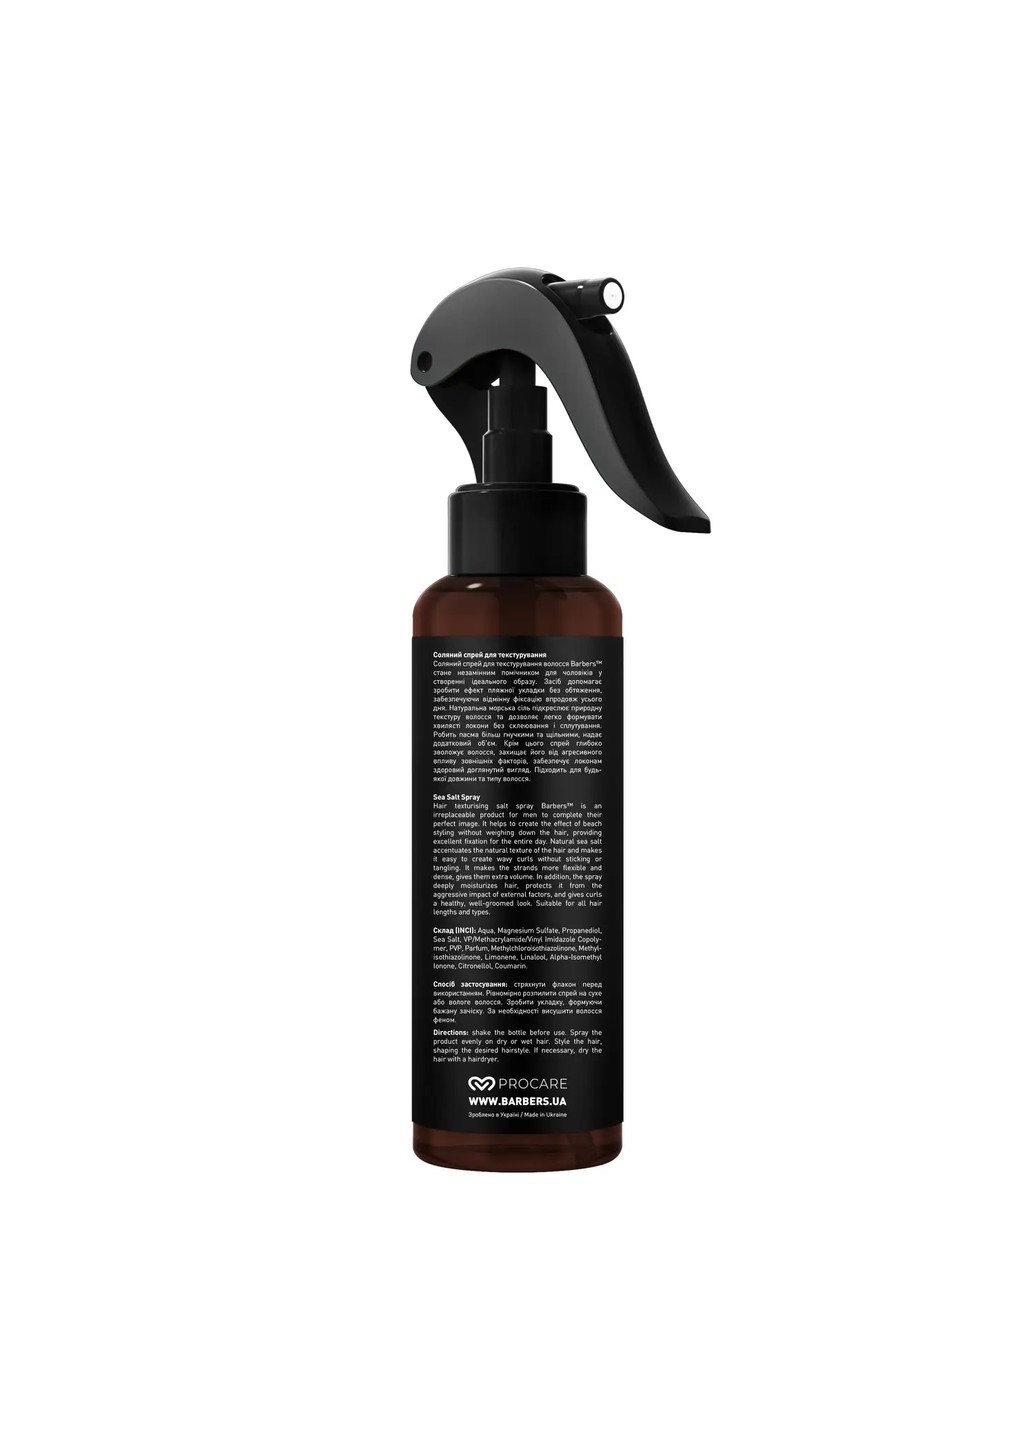 Текстурировочный солевой спрей для волос Miami 200 мл Barbers (269237734)